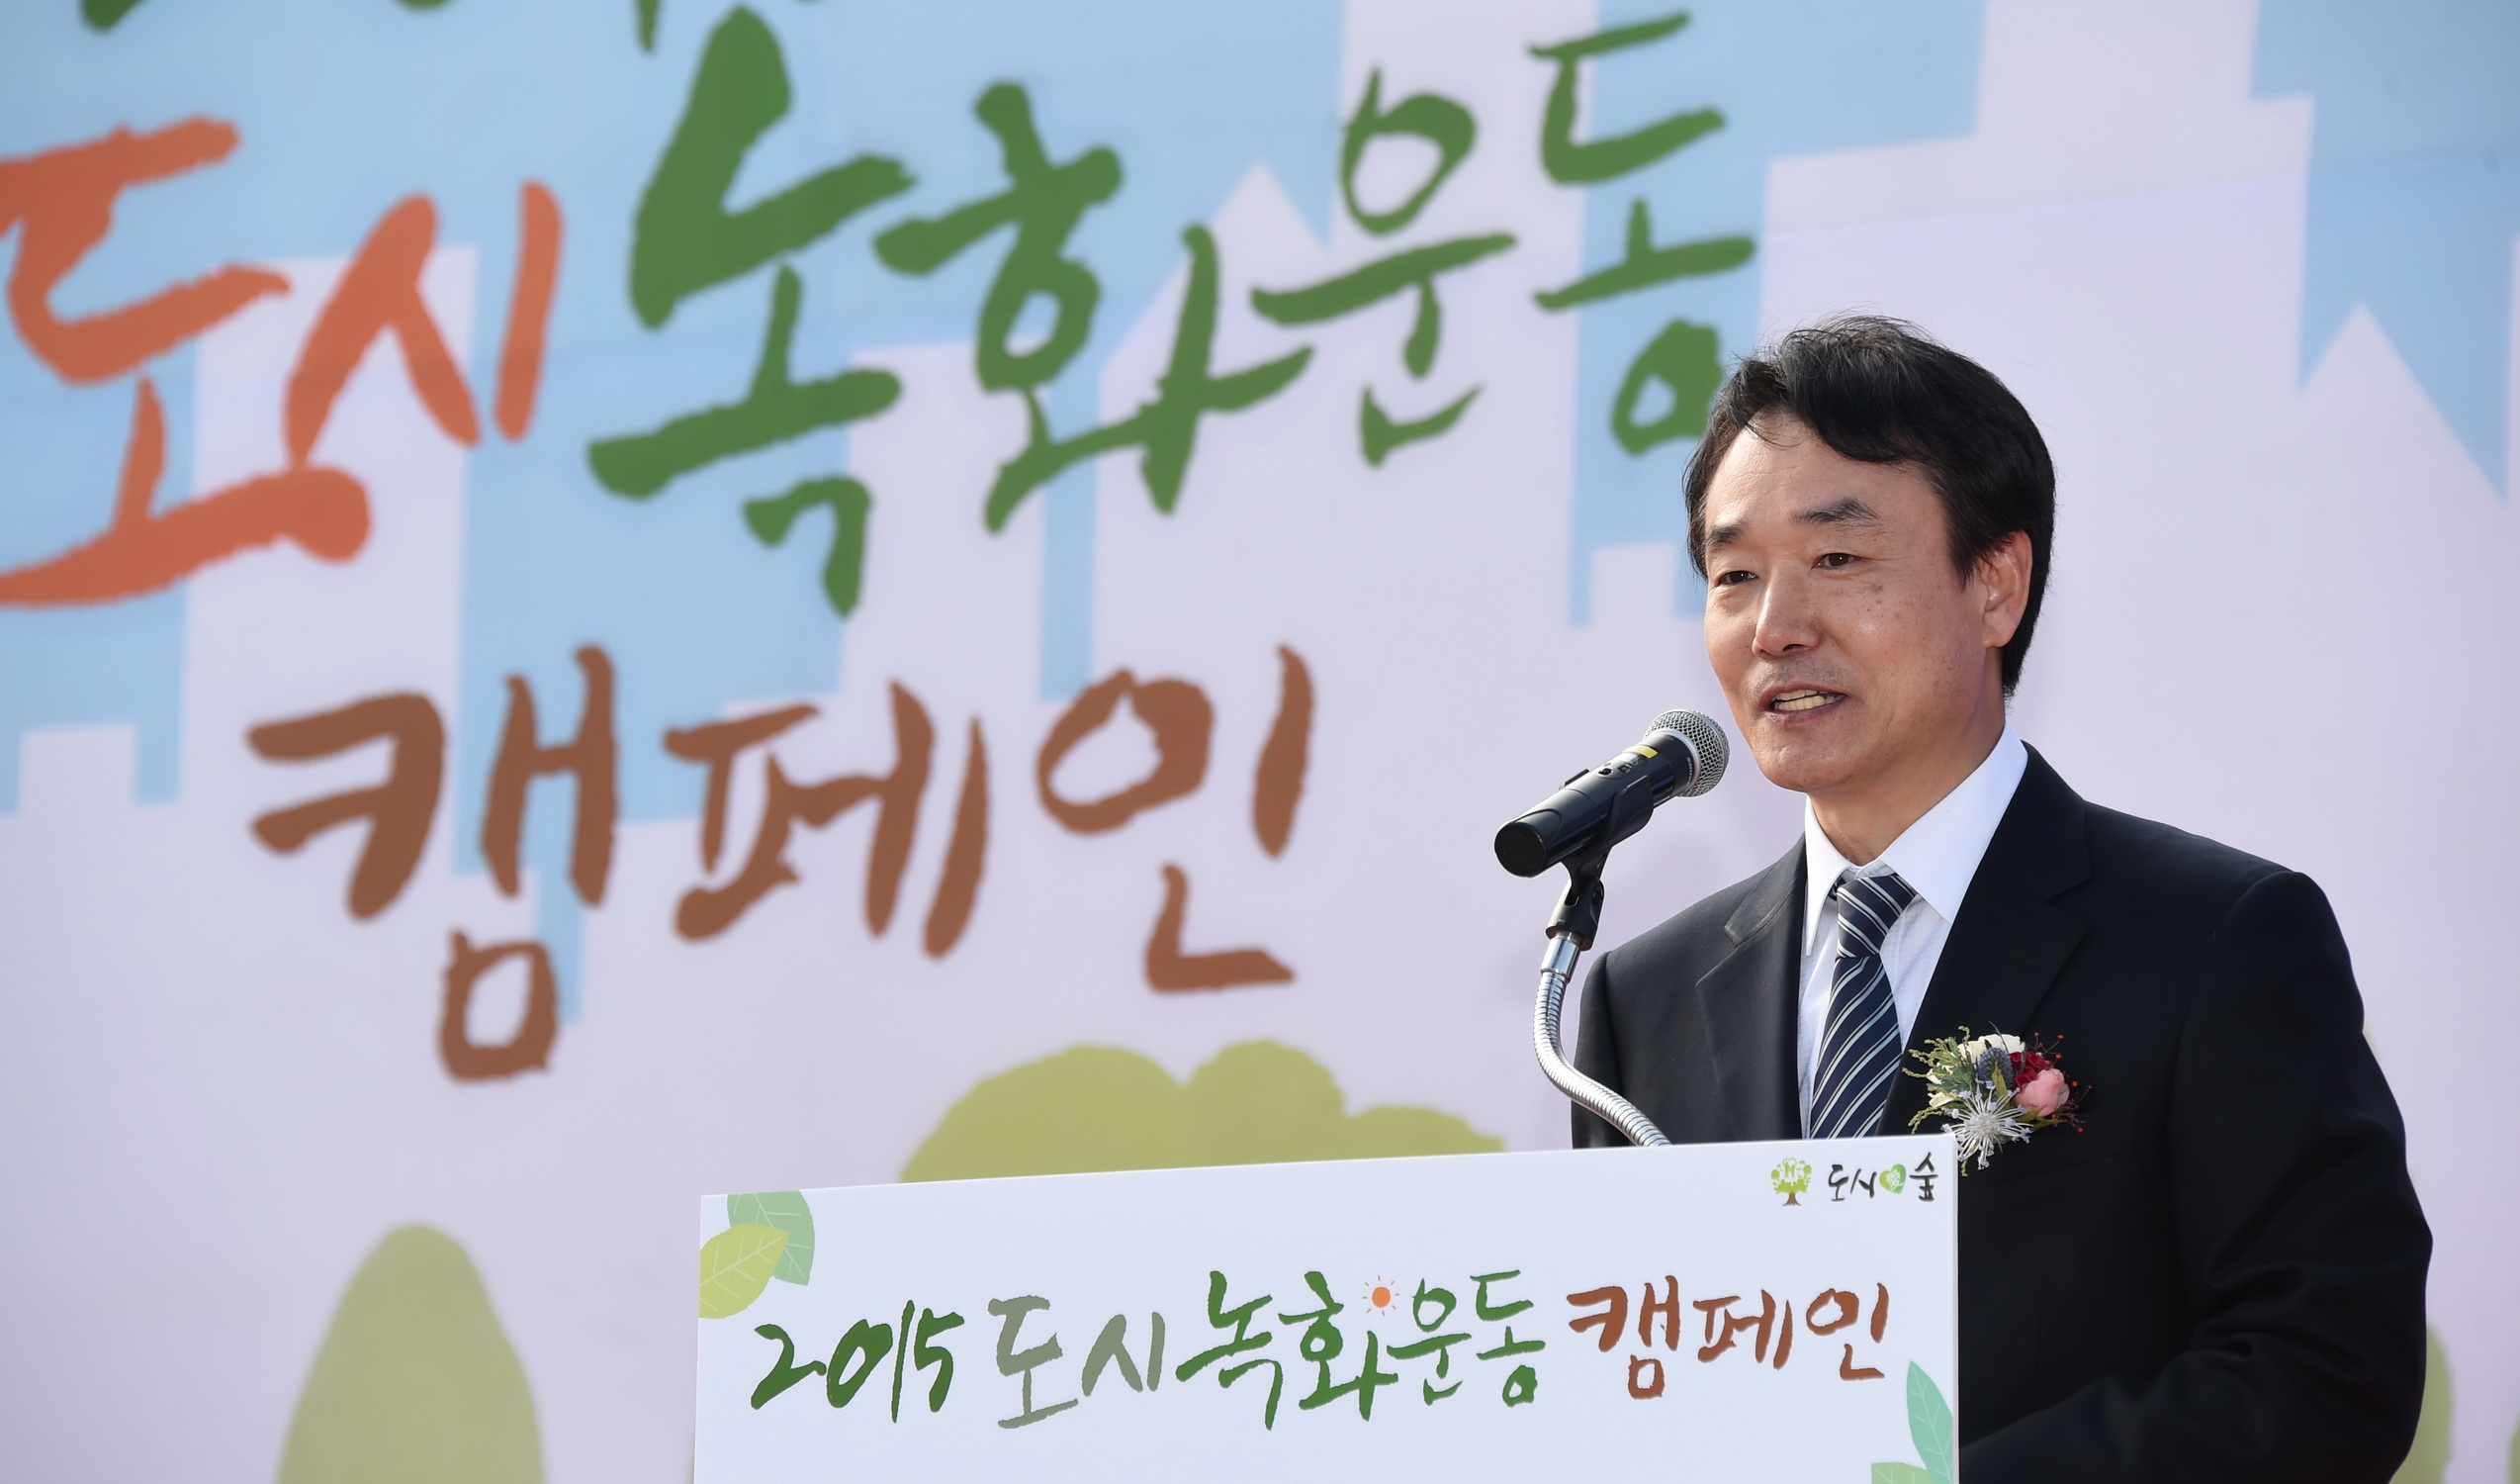 '2015 도시녹화운동 캠페인', 인천 송도서 열려 이미지1